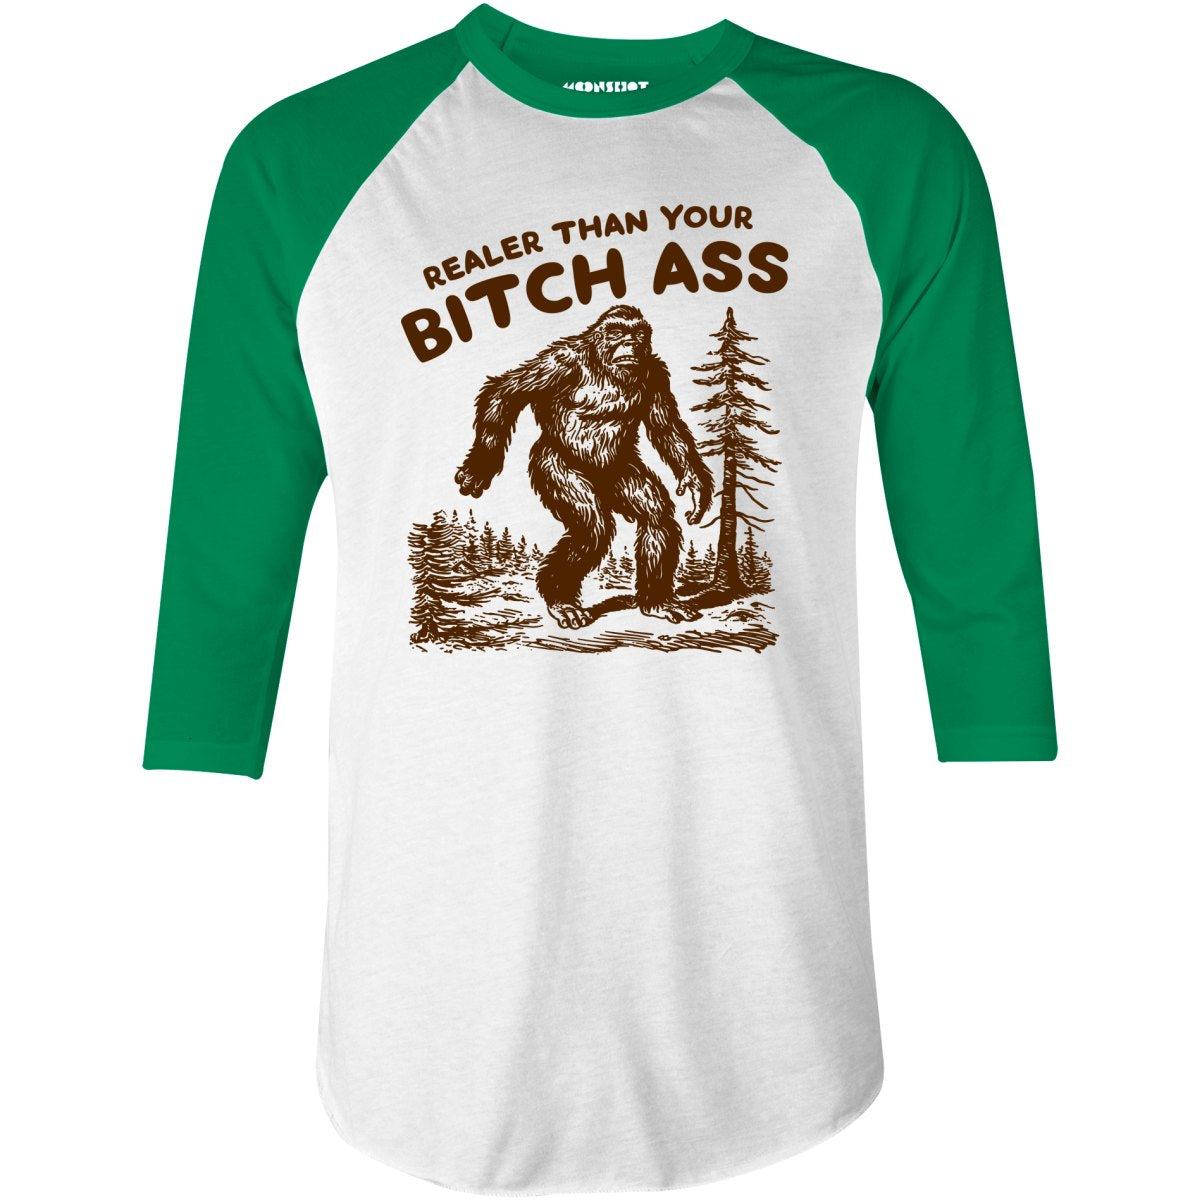 Realer Than Your Bitch Ass - 3/4 Sleeve Raglan T-Shirt